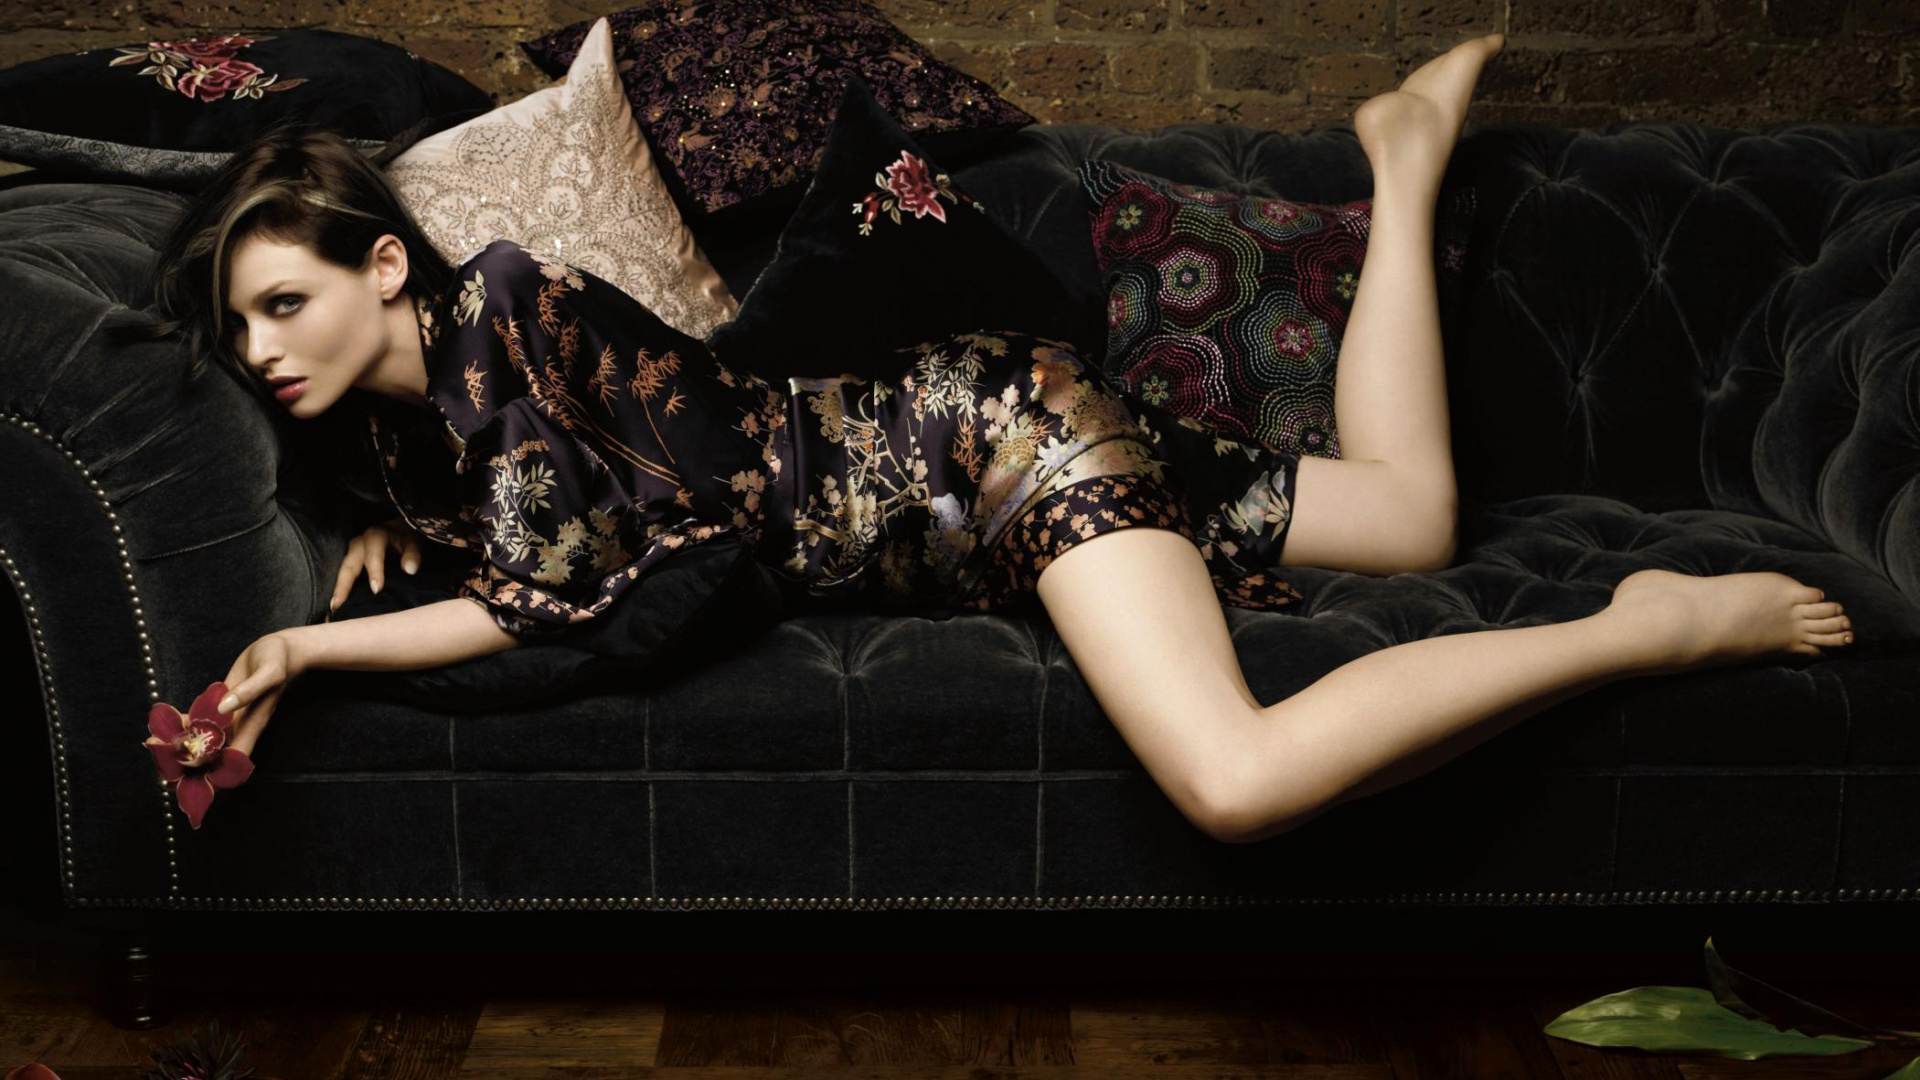 Sophie Ellis-Bextor, Beauty, Fashion, Leg, Dress. Wallpaper in 1920x1080 Resolution